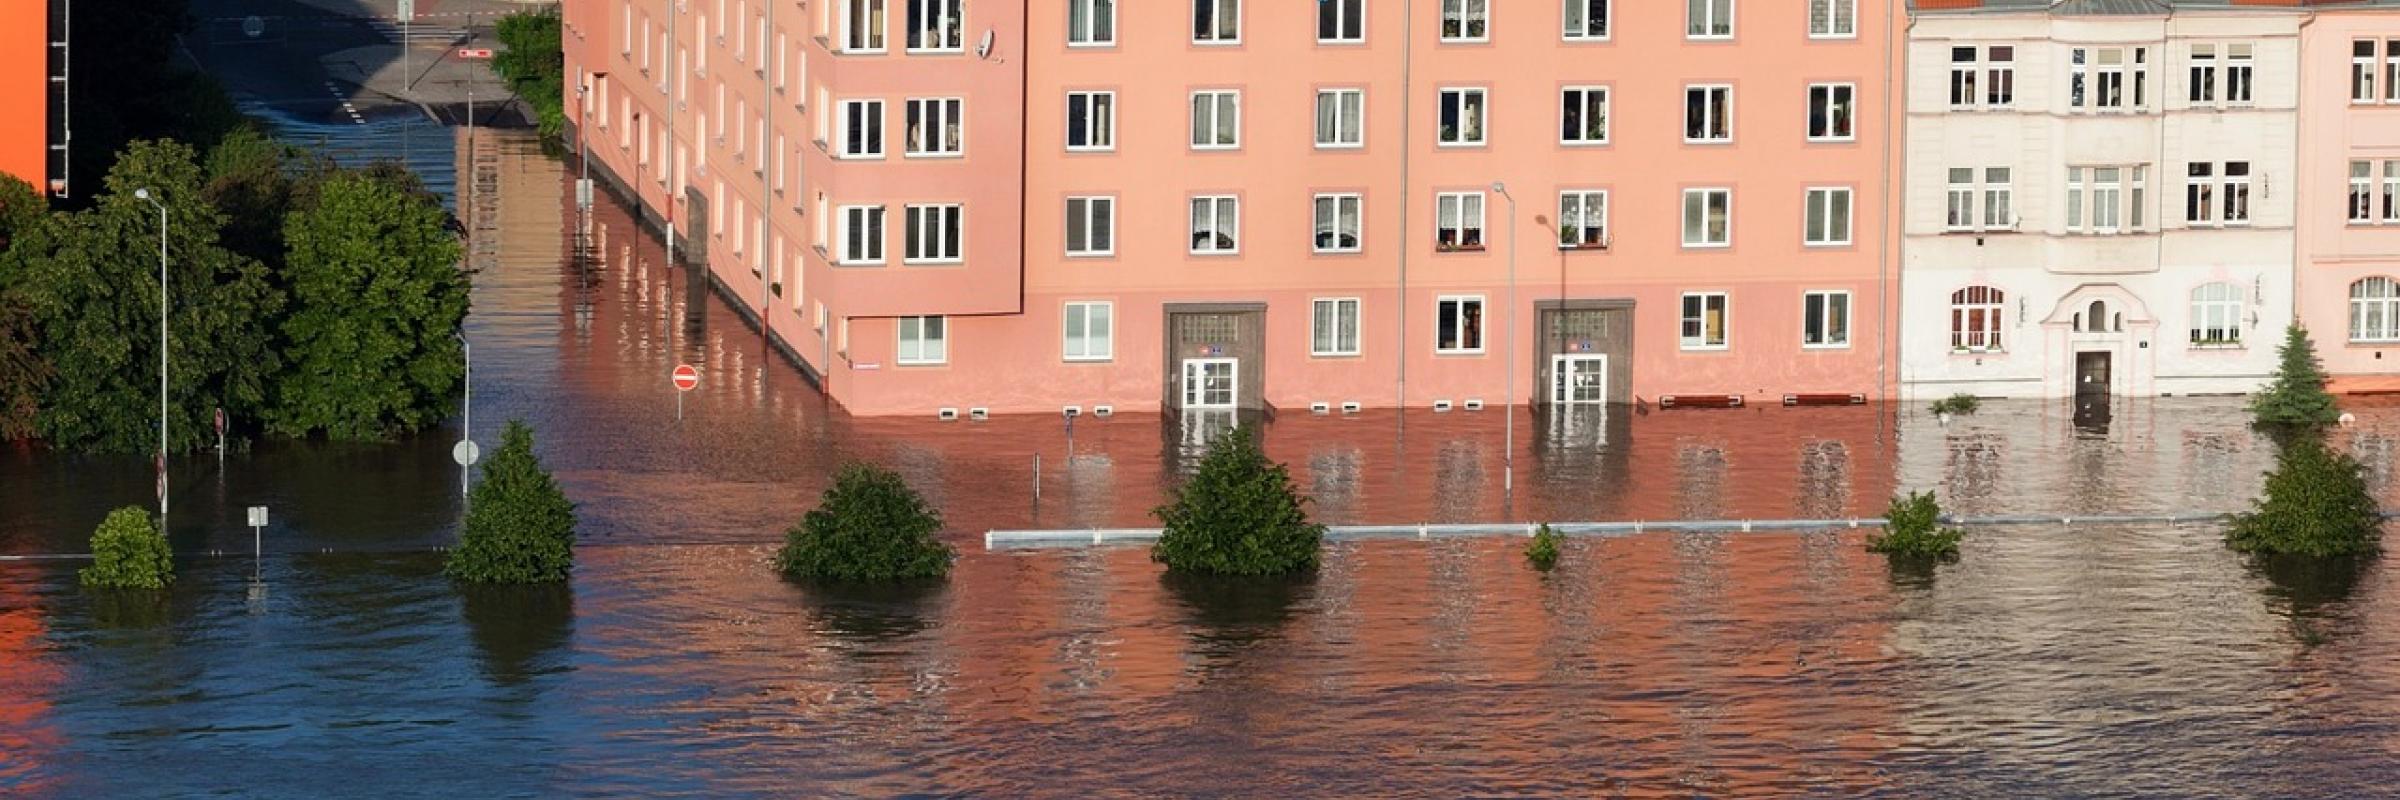 inondation d'immeubles 